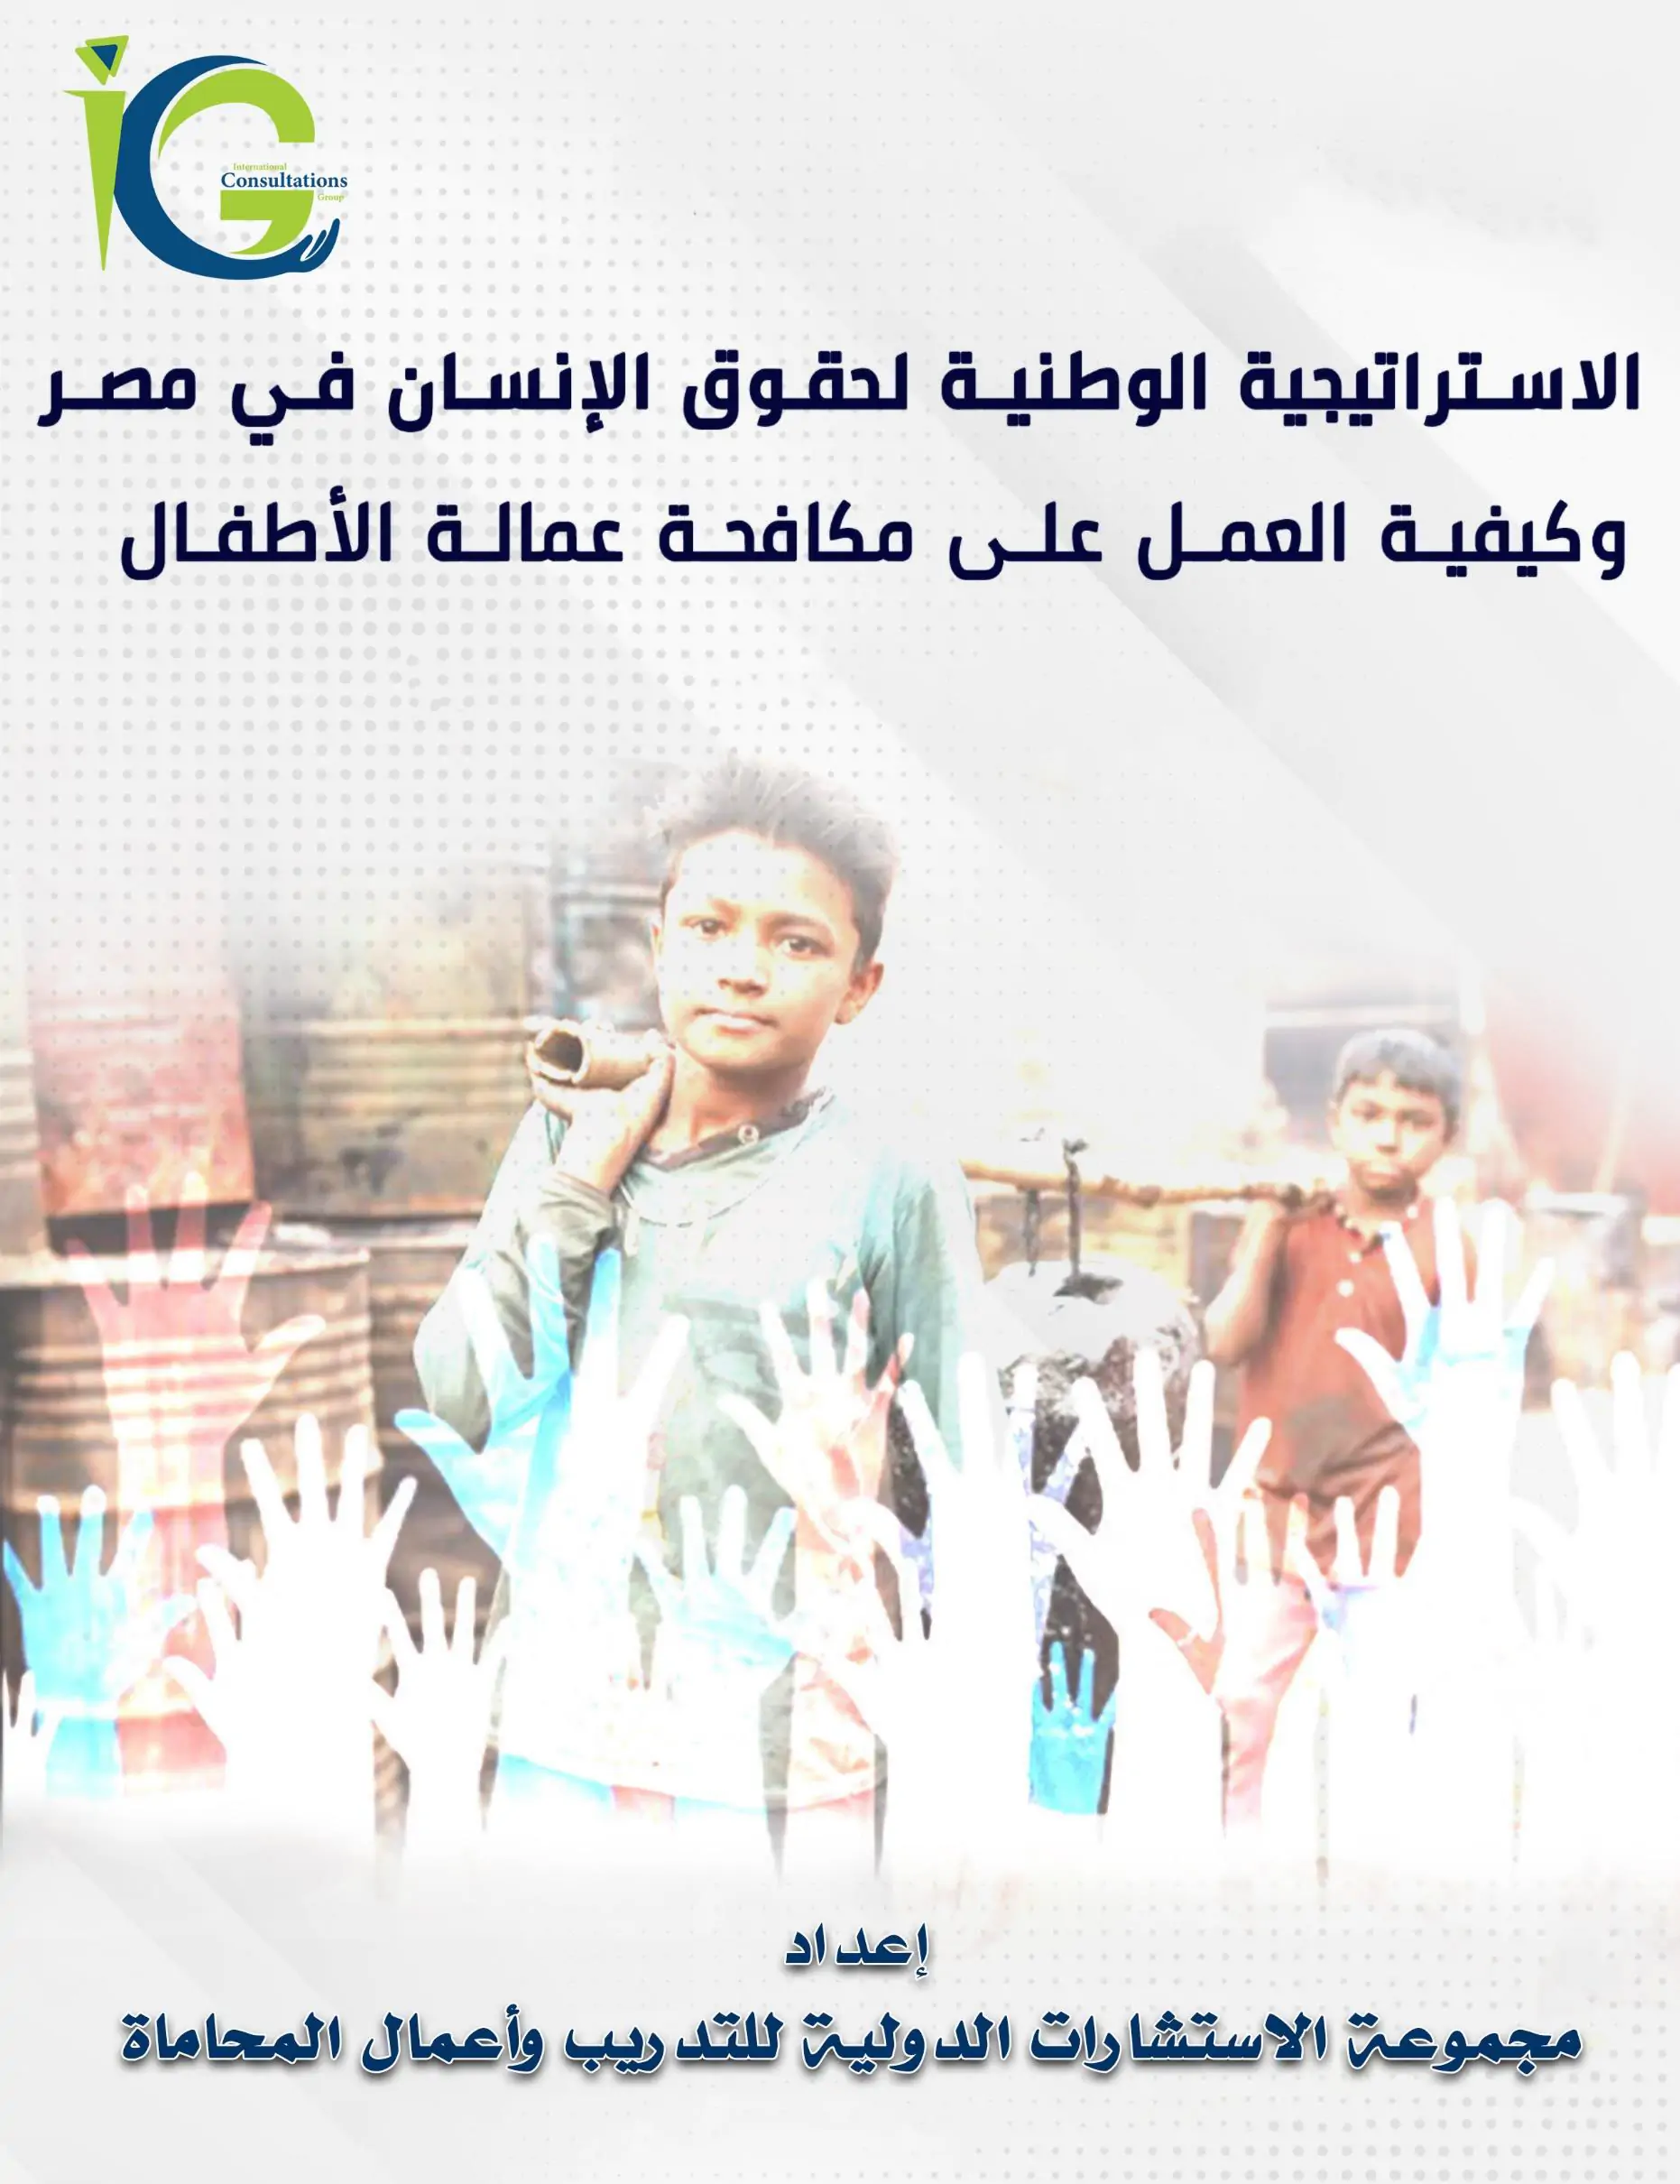 الاستراتيجية الوطنية لحقوق الإنسان في مصر وكيفية العمل علي مكافحة عمالة الاطفال